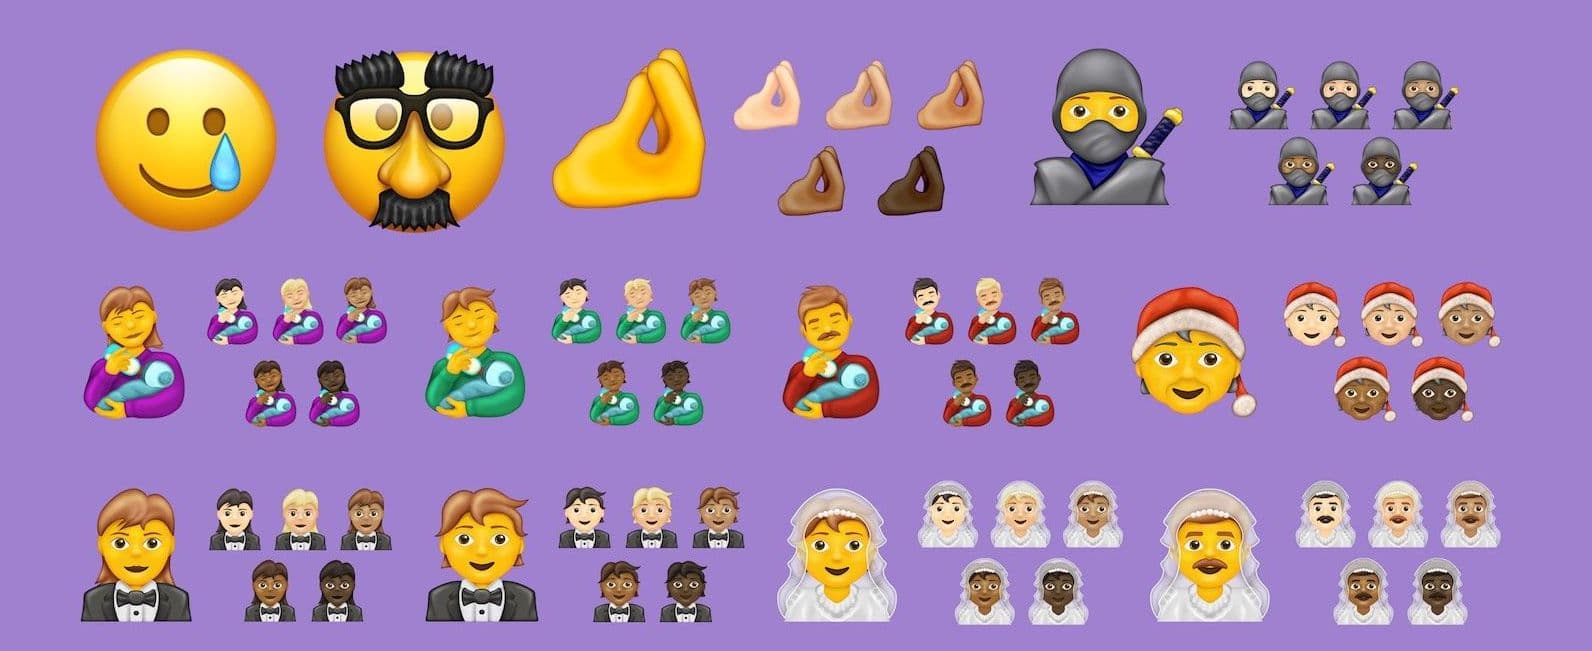 統一碼聯盟公布 2020 全新 Emoji 表情符號2